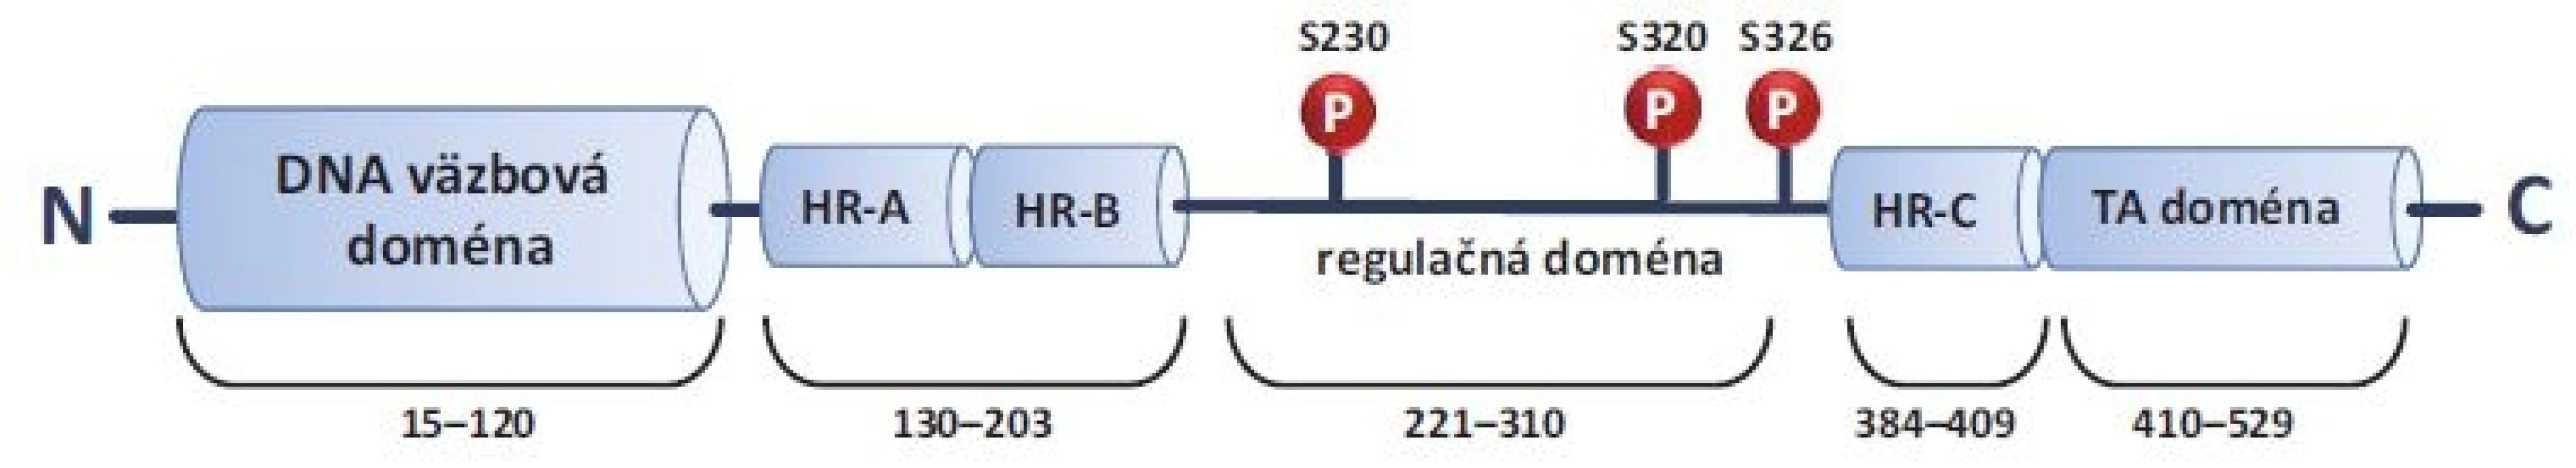 Štruktúra HSF1. HSF1 je proteín zložený zo 4 funkčných domén – DNA väzbová doména, trimerizačná doména, regulačná
doména a transaktivačná doména. Dĺžka ľudského HSF1 je 529 aminokyselín. P (S230, S320, S326) znázorňujú 3 najlepšie popísané
fosforylácie, spojené s aktiváciou HSF1.
